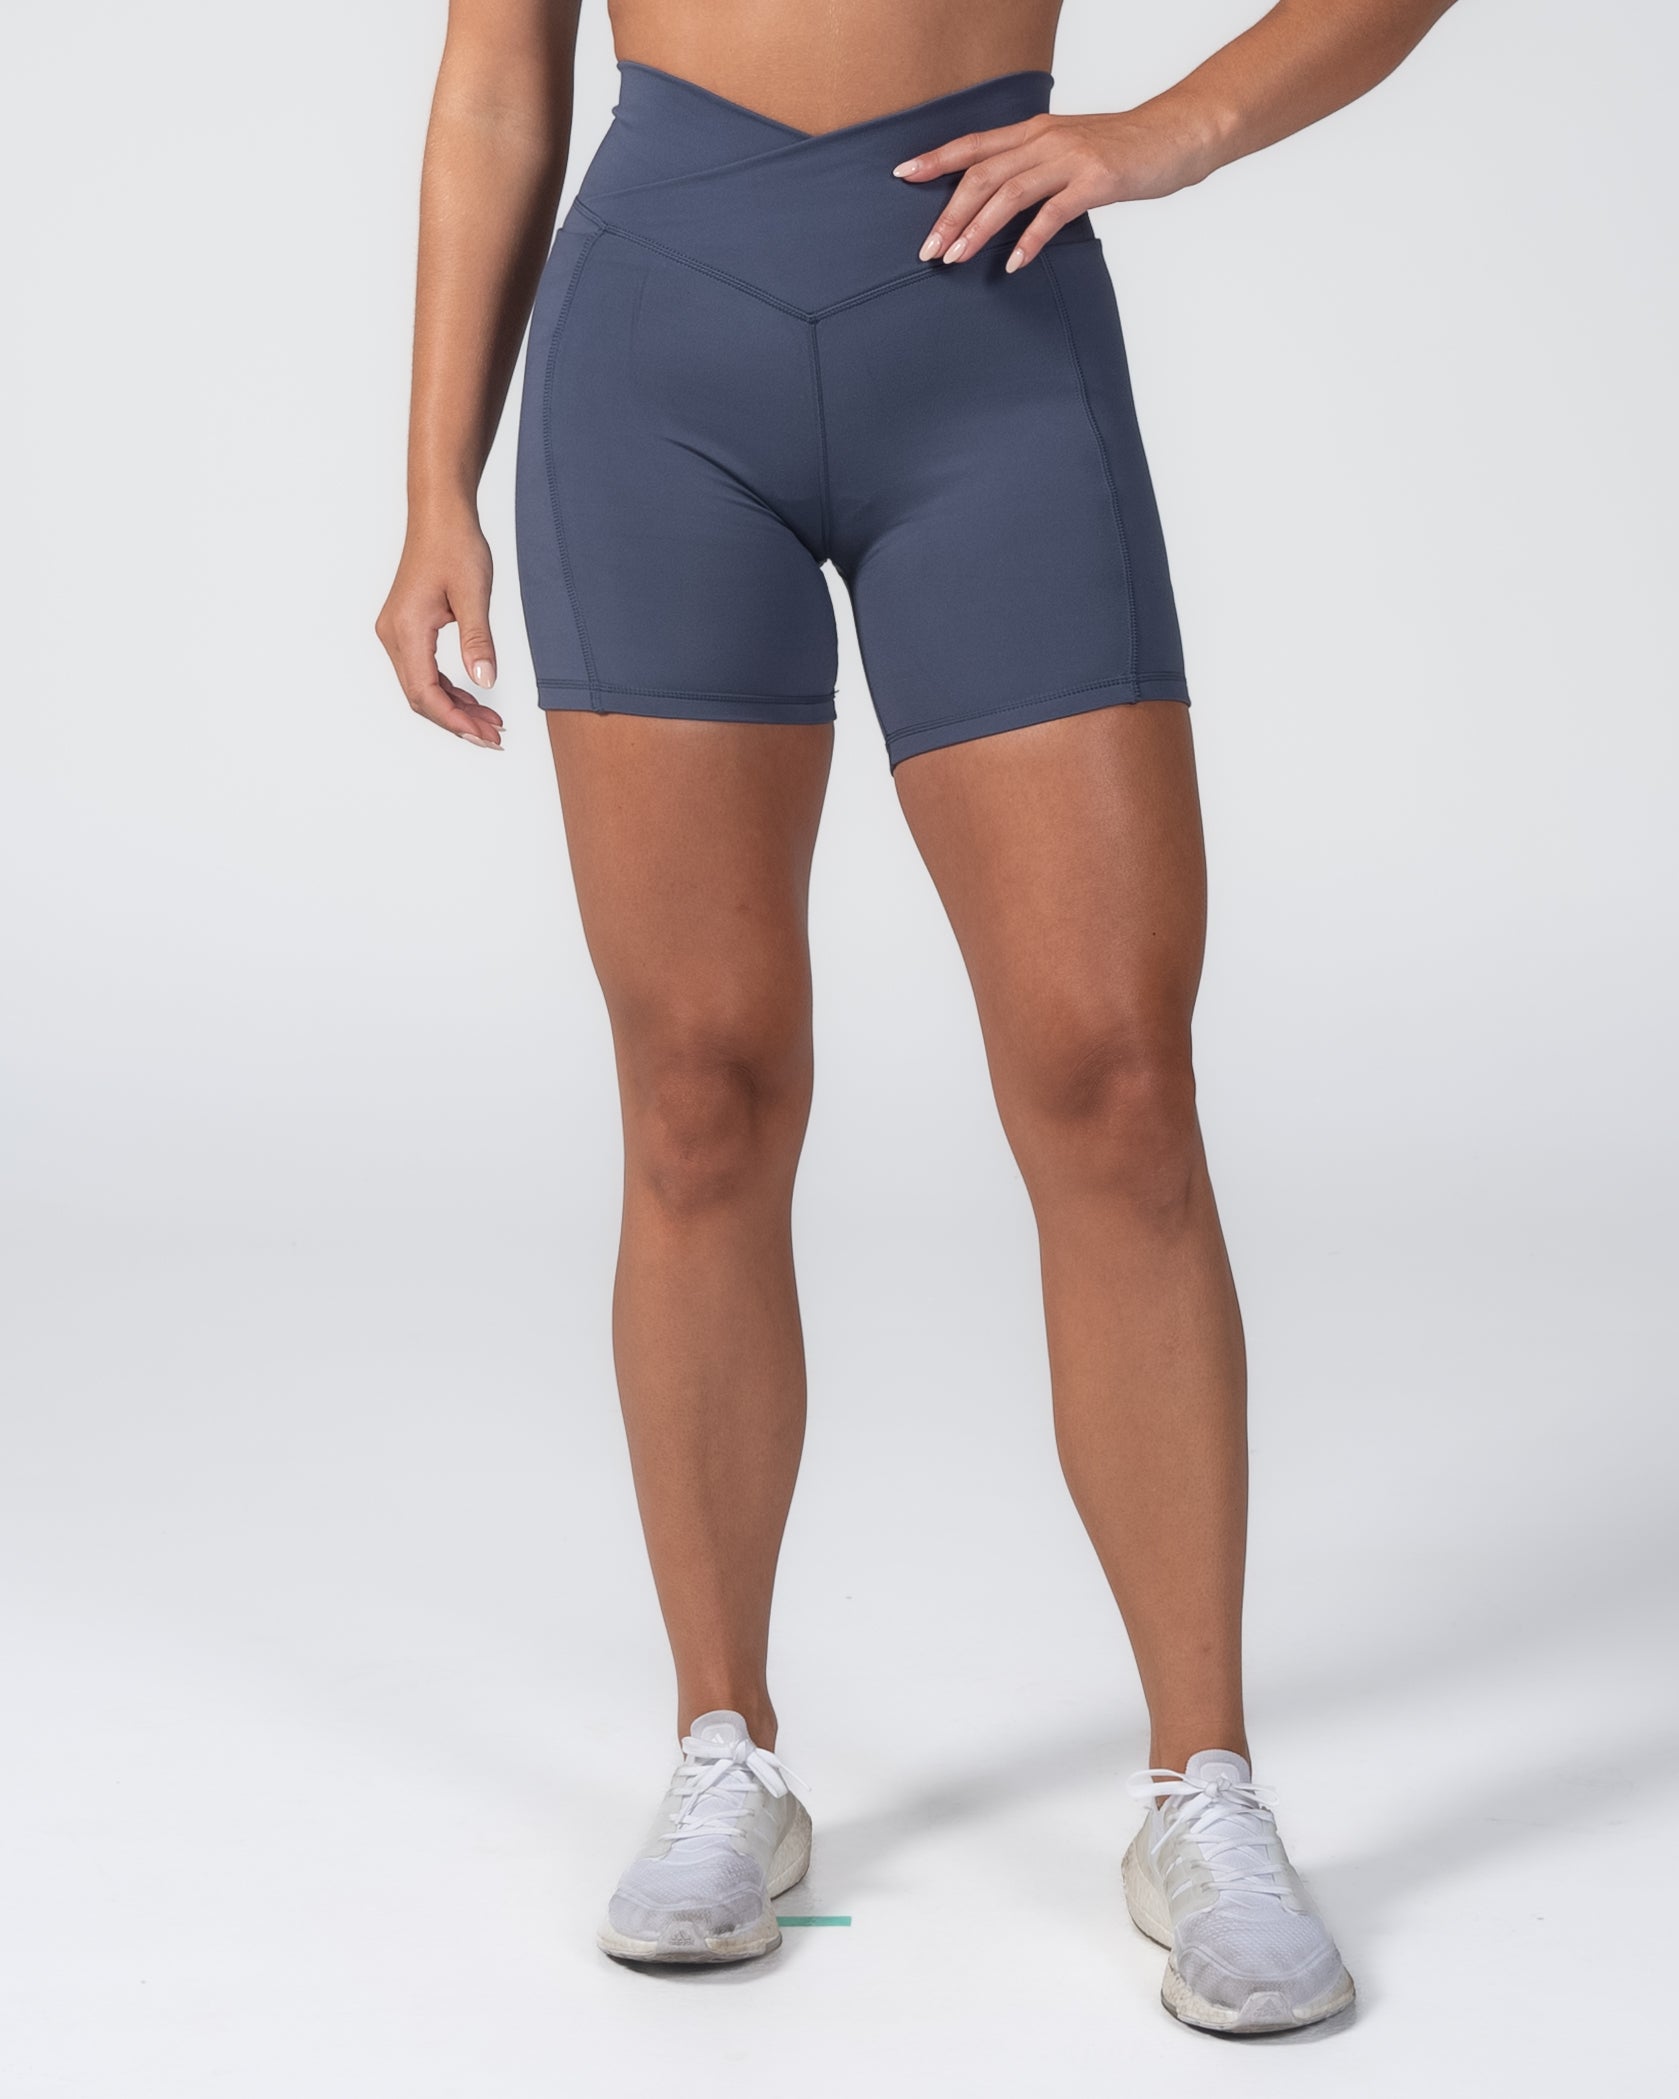 MM Skin Crossover Shorts (Multi-Lengths) - Light Navy – Senita Athletics